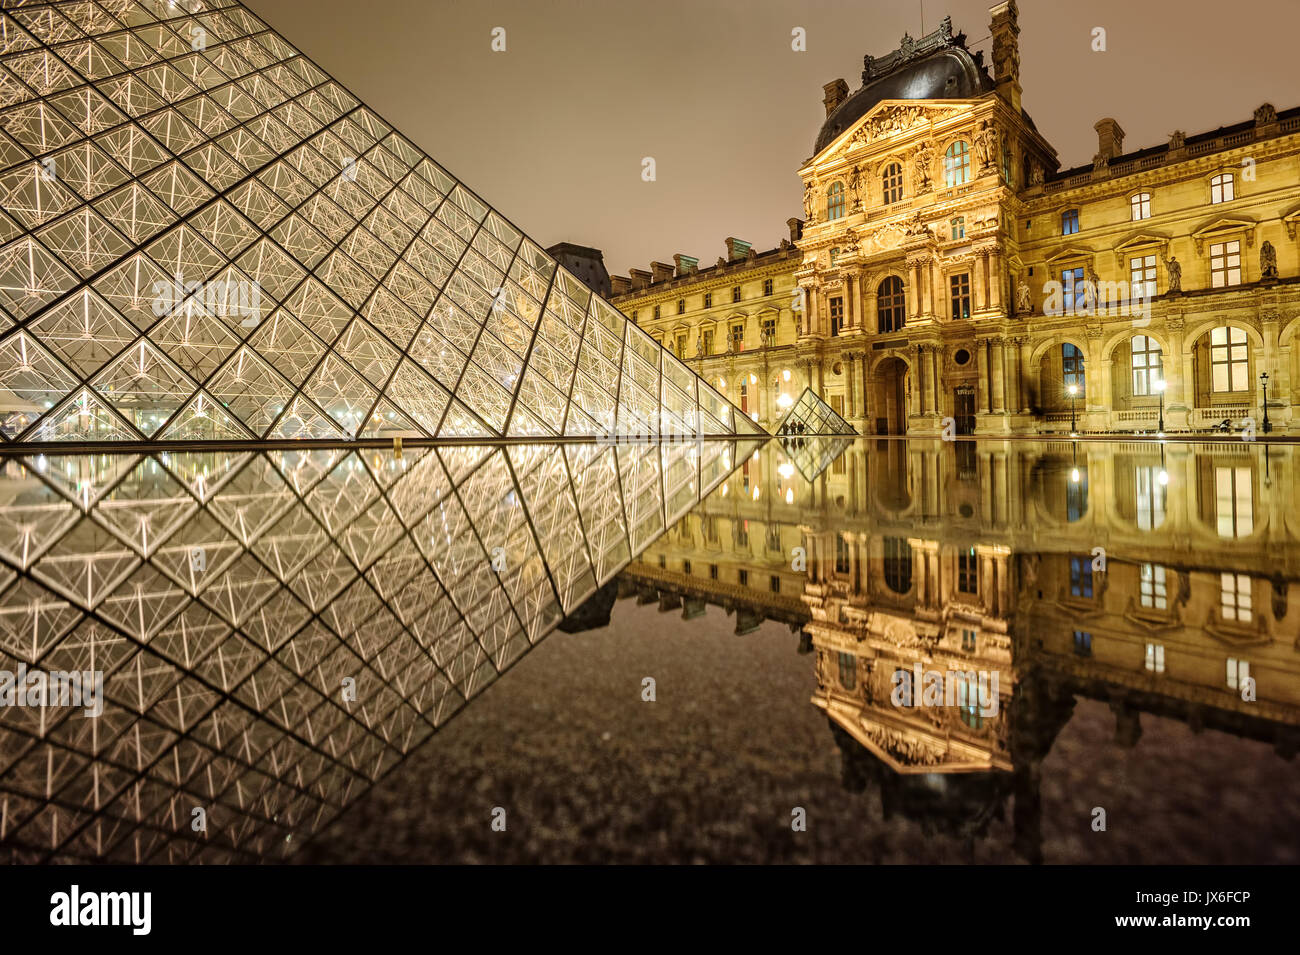 PARIS, FRANCE - 31 décembre : le musée du Louvre et la Pyramide de verre éclairé par la nuit. Avec plus de 8 millions de visiteurs l'année pro Louvre est l'un des Banque D'Images